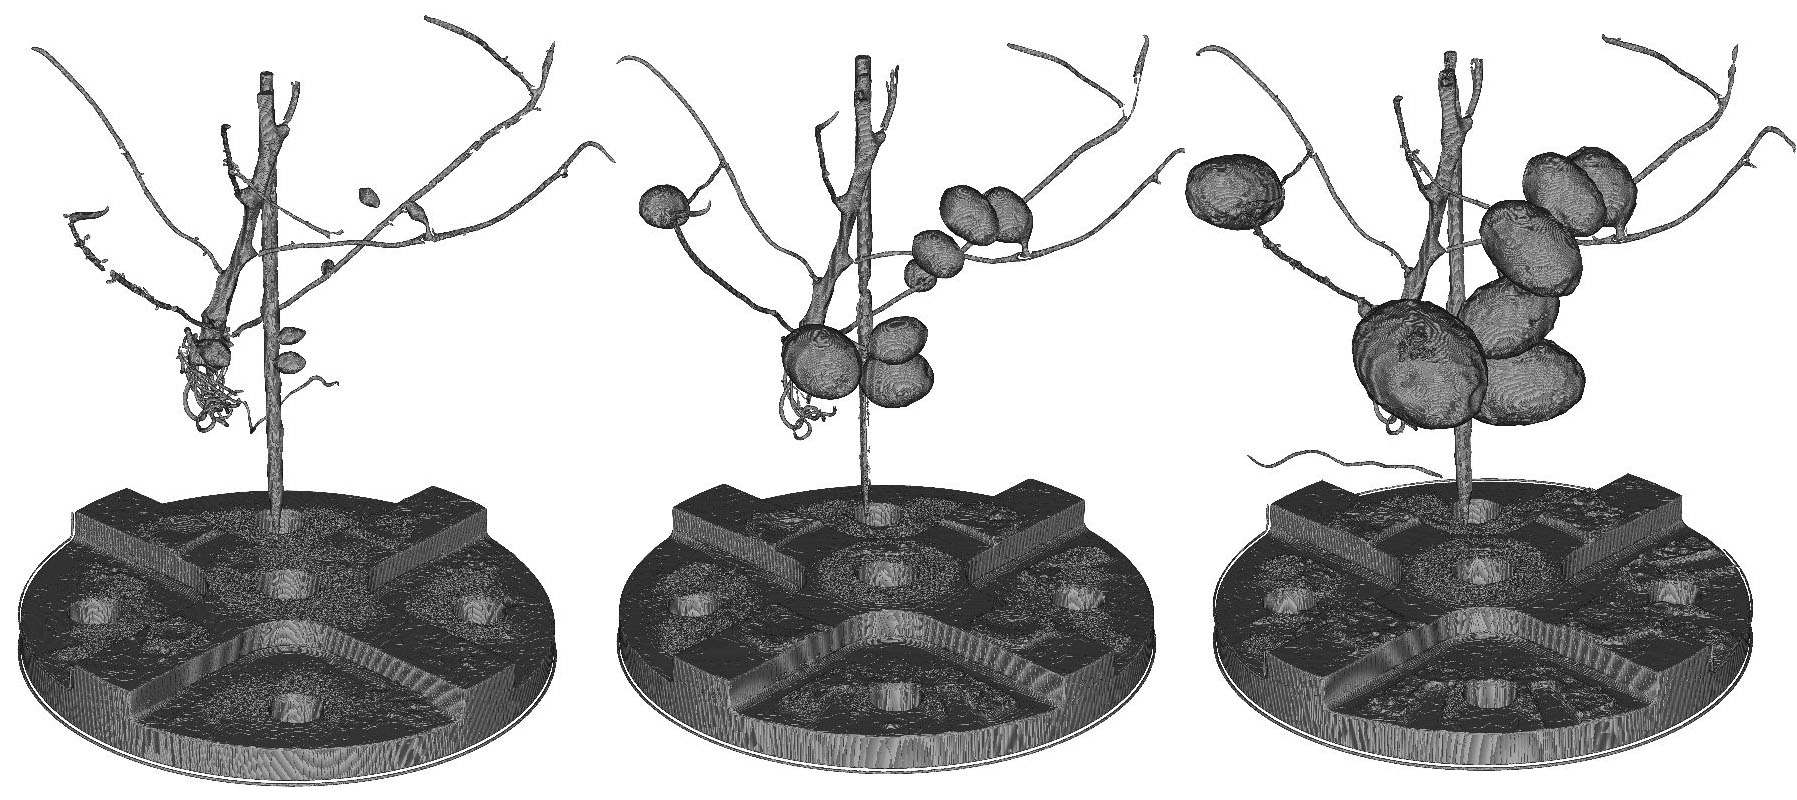 Röntgenbilder von Kartoffeln in unterschiedlichen Wachstumsphasen